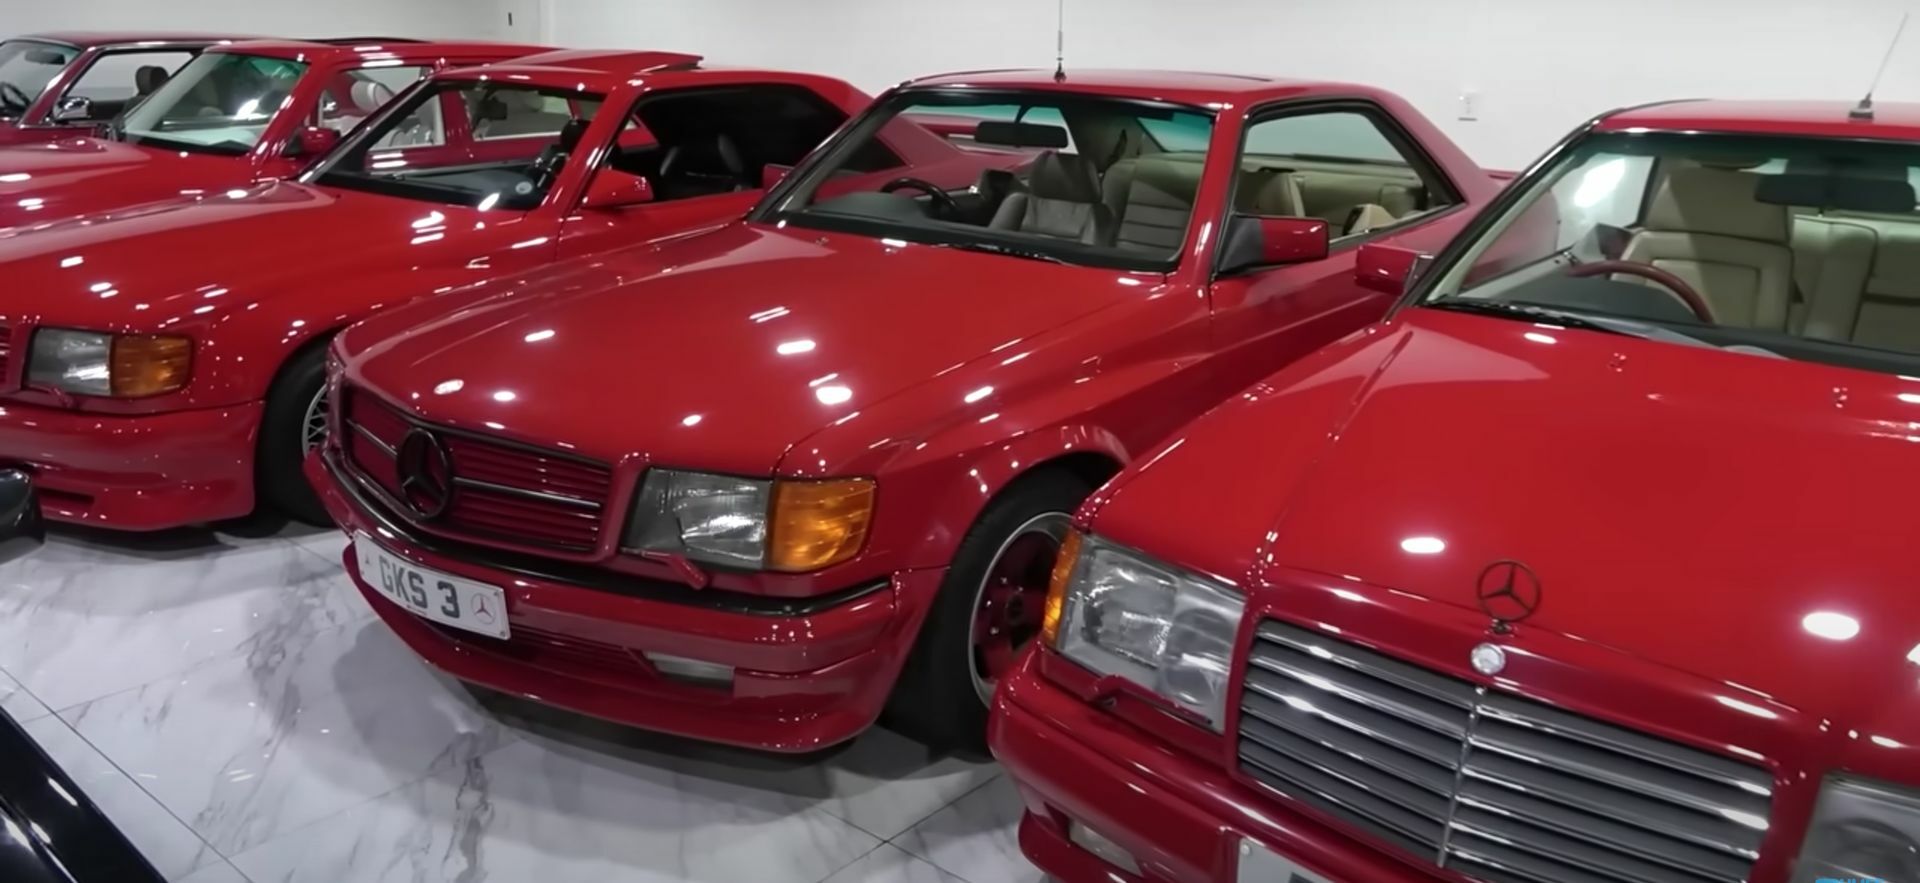 Las siete colecciones privadas de coches más increíbles del mundo